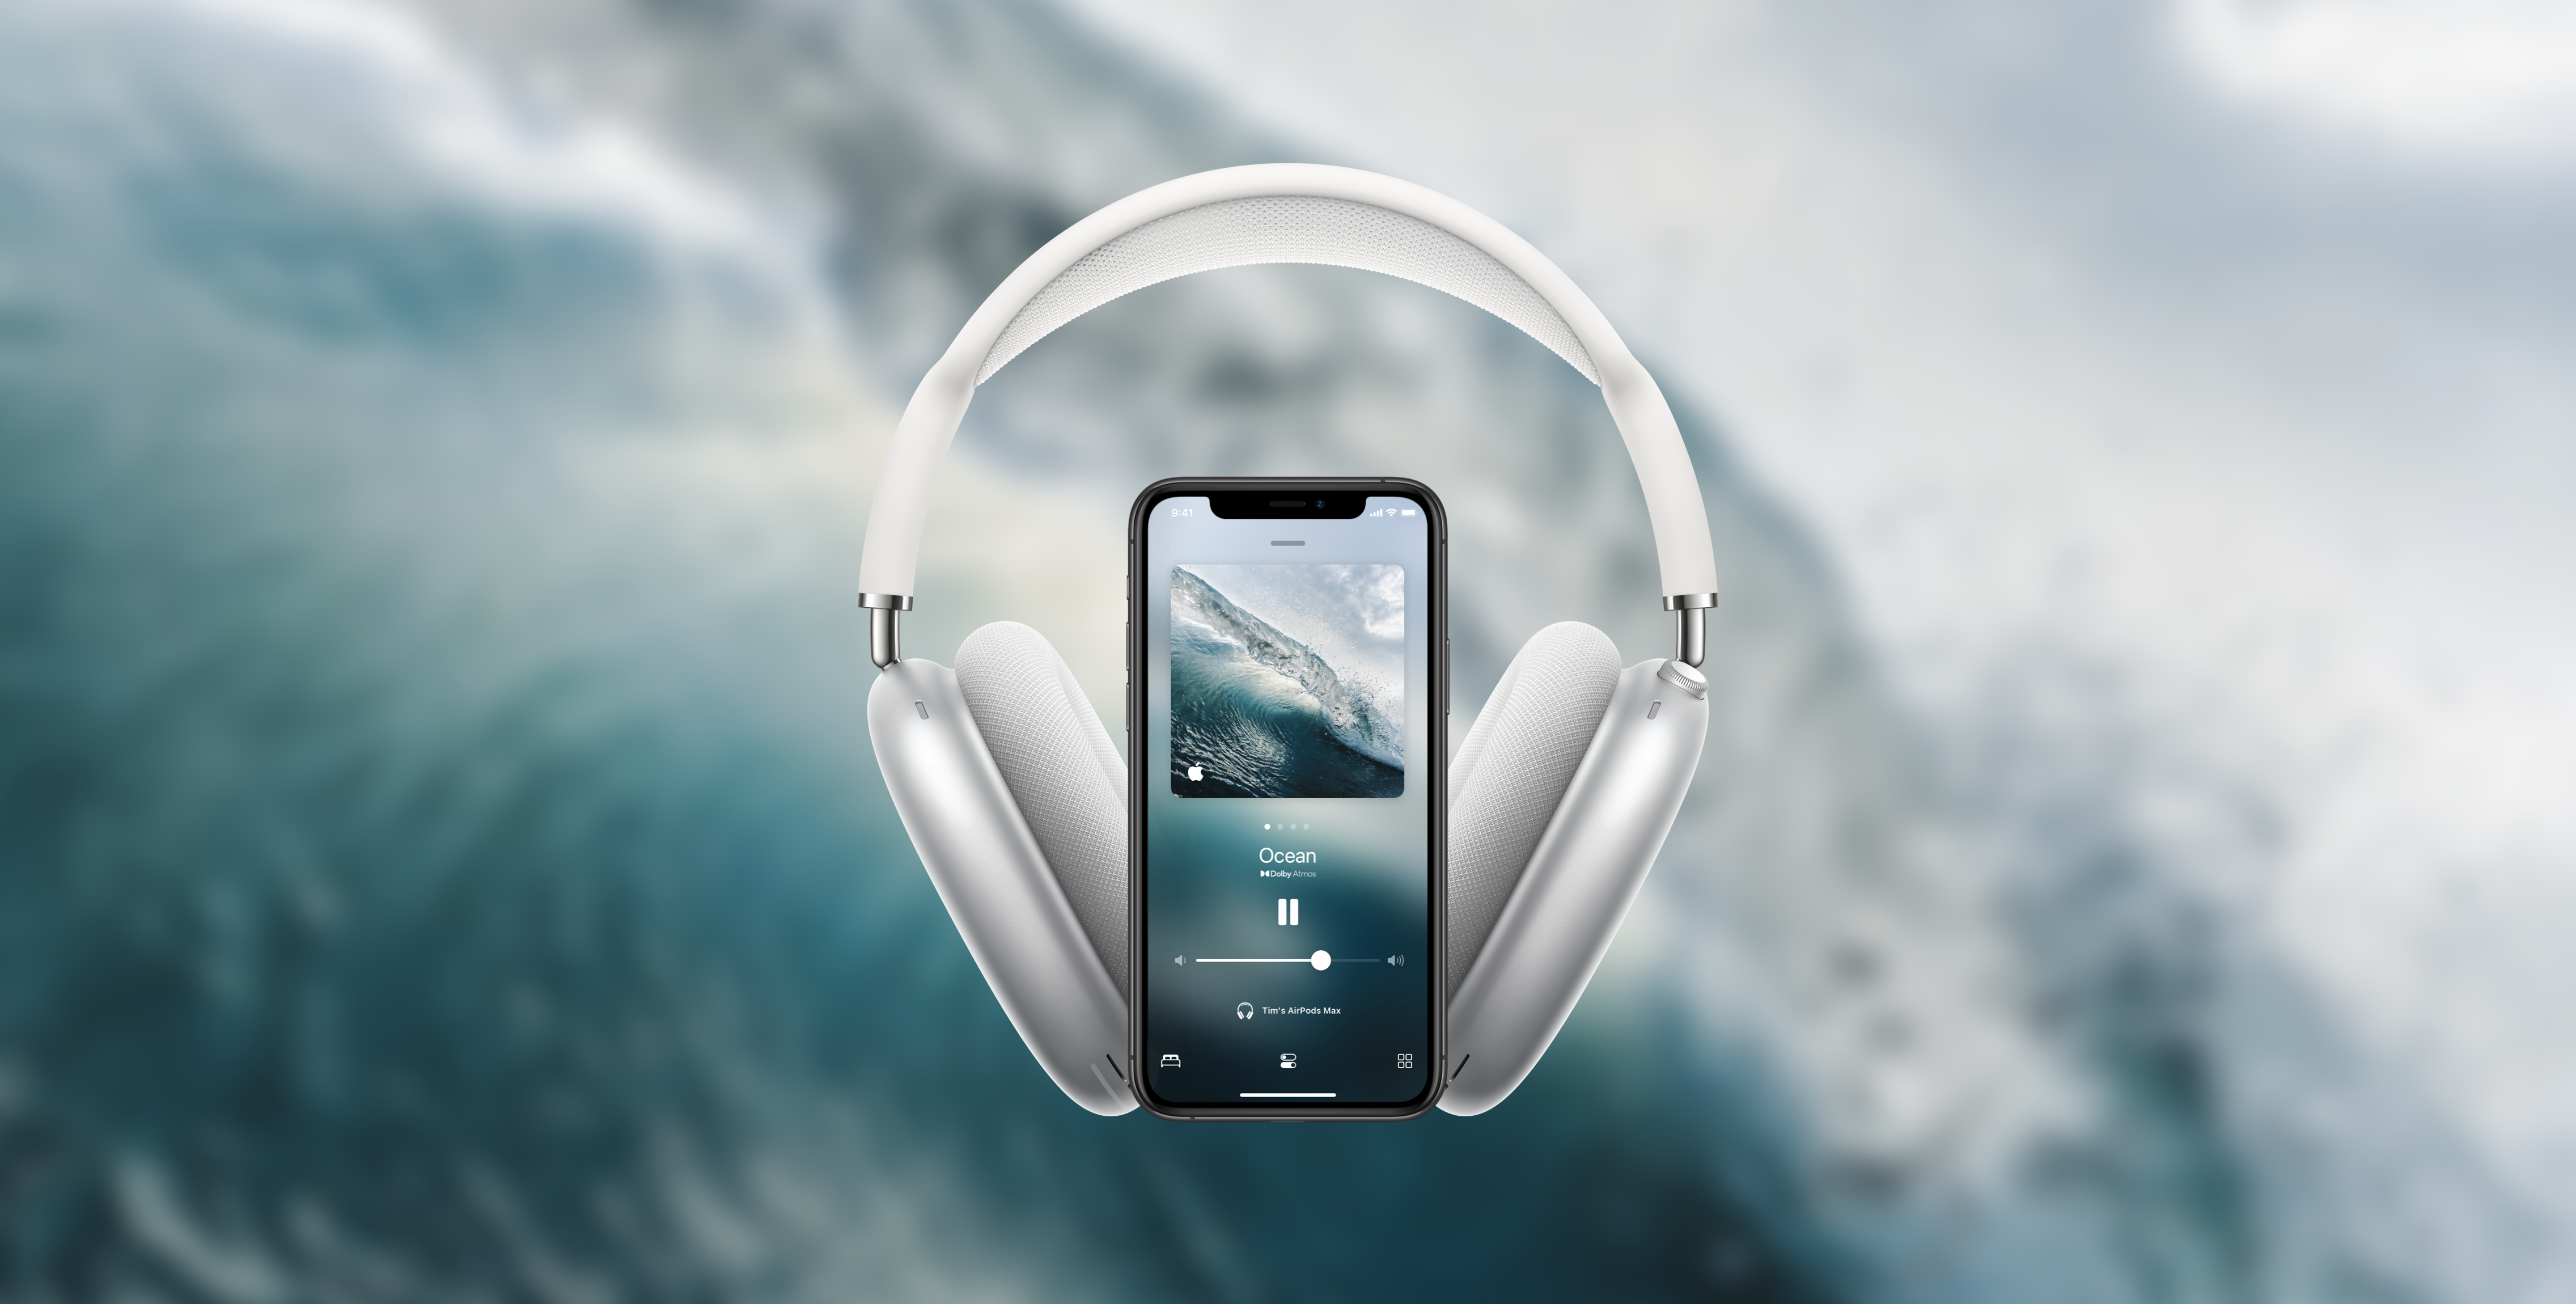 Âm thanh nền trong iOS 15 có ứng dụng riêng của chúng để giúp bạn tập trung và giảm stress. Những giọng nói êm dịu, tiếng chuông trời đất, những điệu nhạc bất tận sẽ giúp bạn tinh thần sảng khoái và năng động hơn trong công việc. Hãy trải nghiệm ngay nhé!